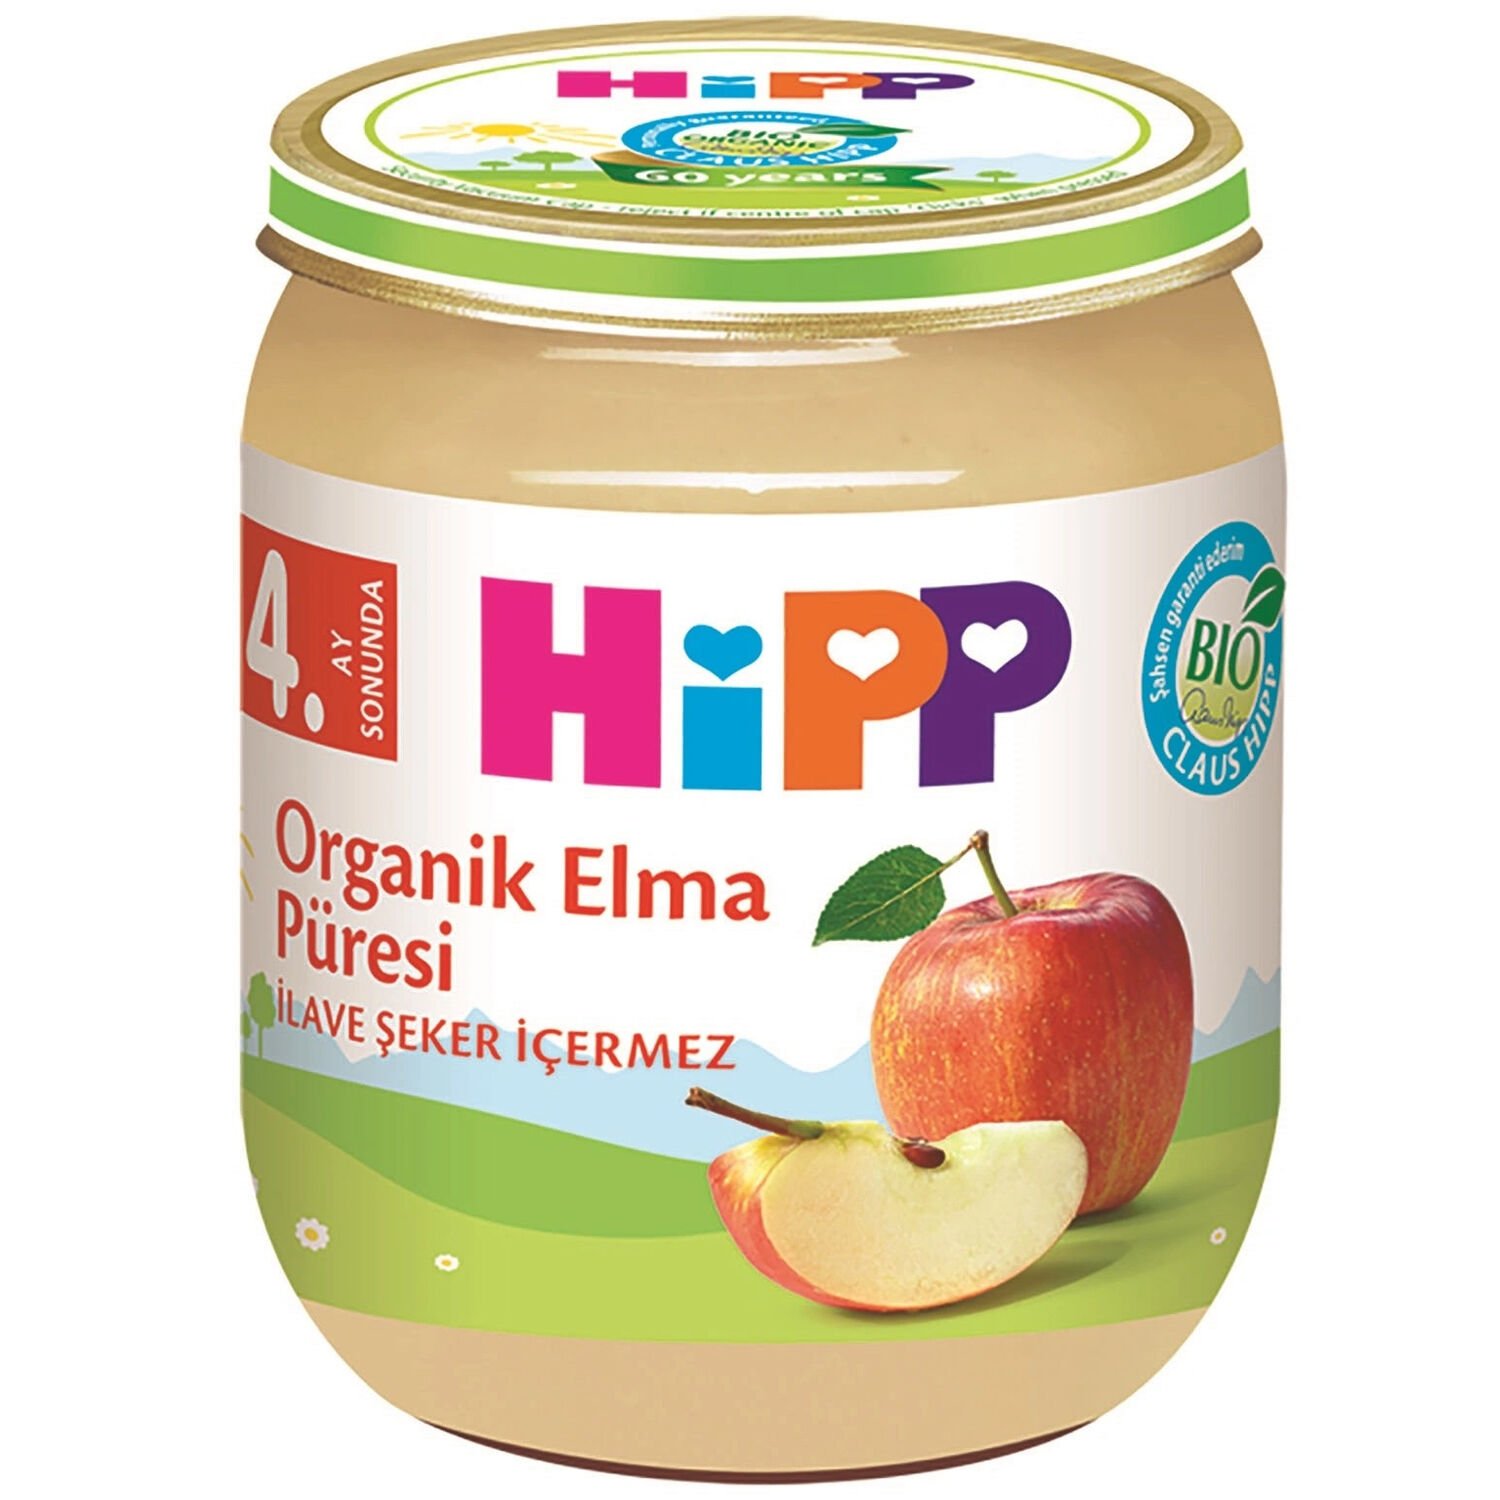 Hipp Kavanoz Maması Organik Elma Püresi 125 gr